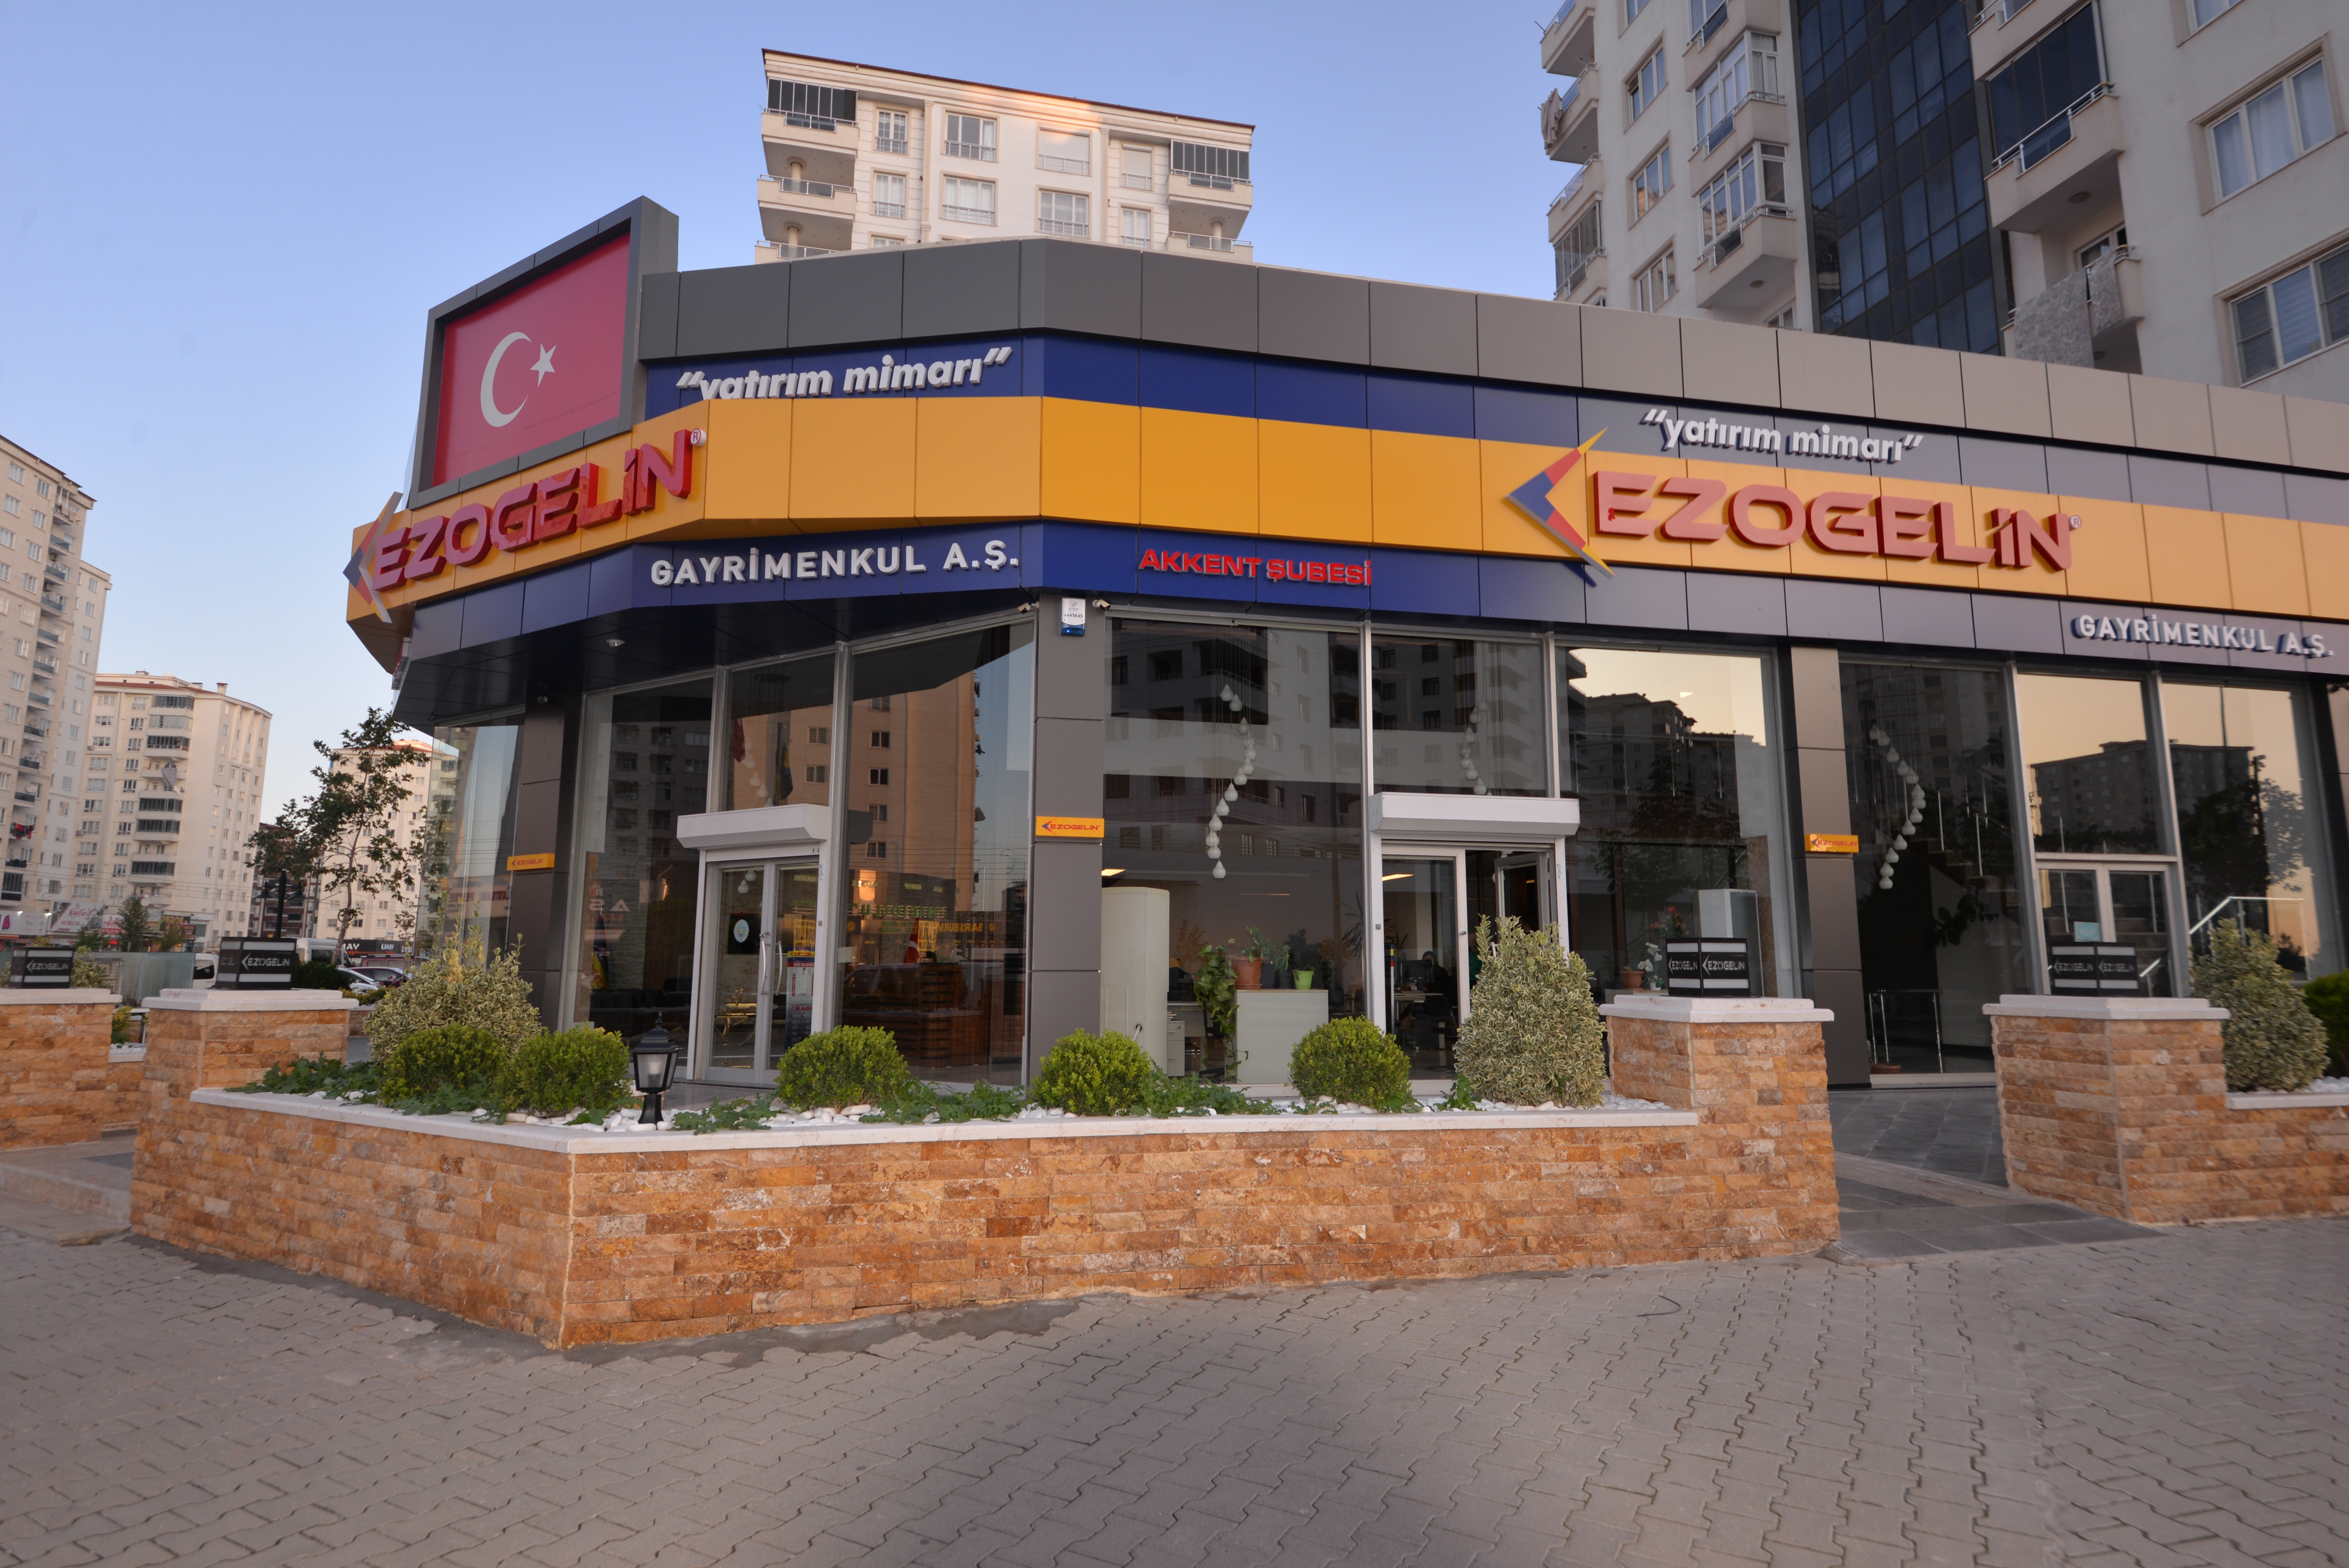 تأسست شركة Egem Ezogelin Gayrimenkul A.Ş عام 1996